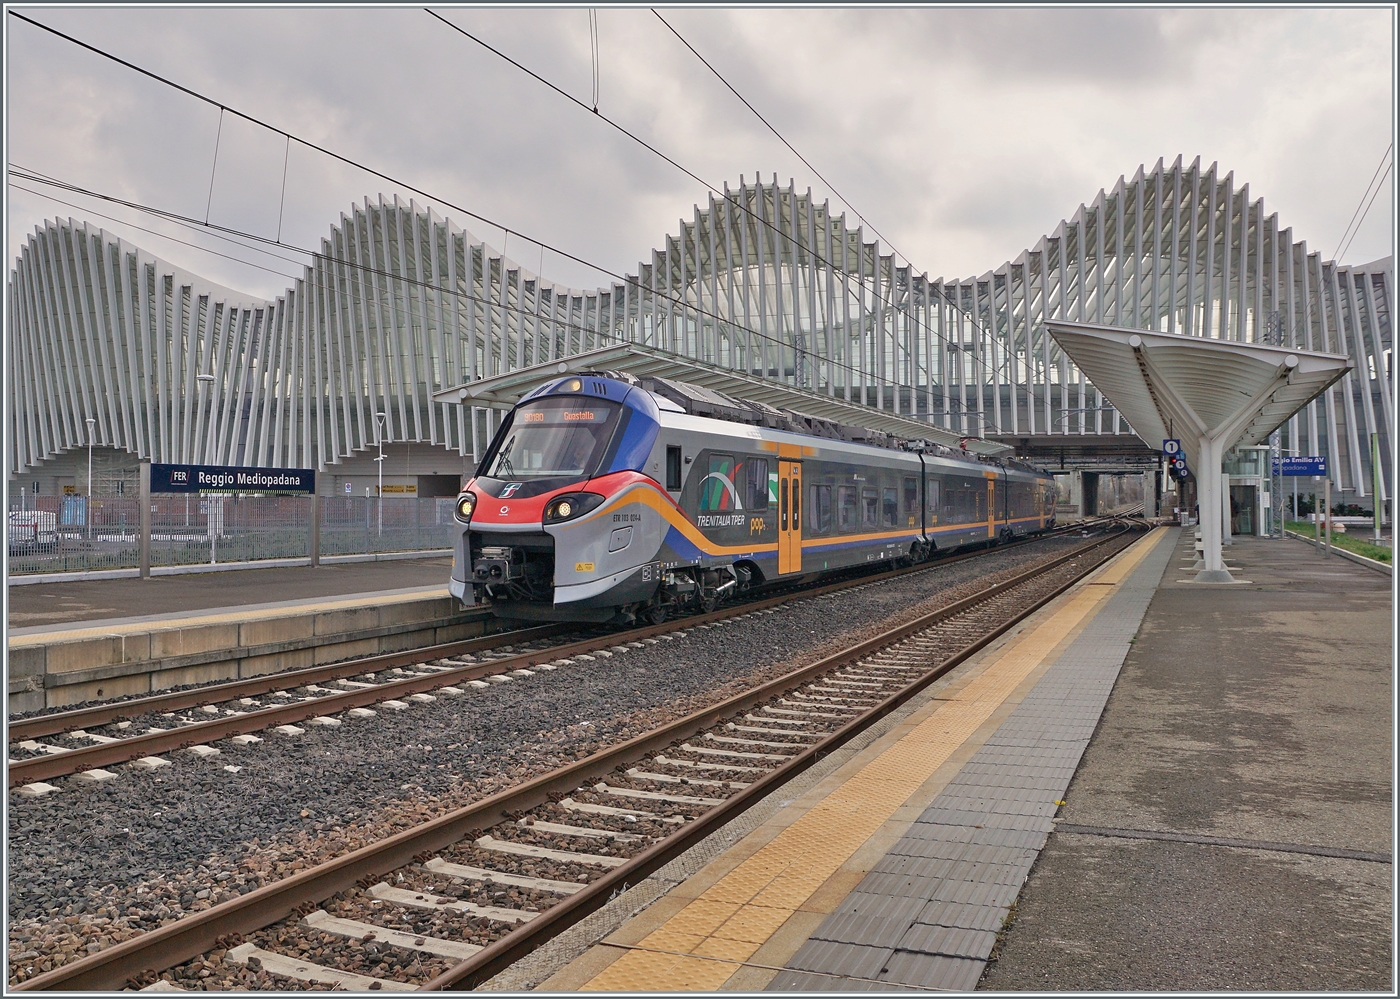 Der FS Treniatalia ETR 103-024 der Tochtergesellschaft TPER (Trasporto Passeggeri Emilia Romagna) ist als Regionalzug 90180 von Reggio Emilia nach Guastalla unterwegs und verlässt den Bahnhof Reggio Mediopadana. Im Hintergrund ist der imposante Bahnhof von Reggio Emilia AV zu erkennen.

14. März 2023